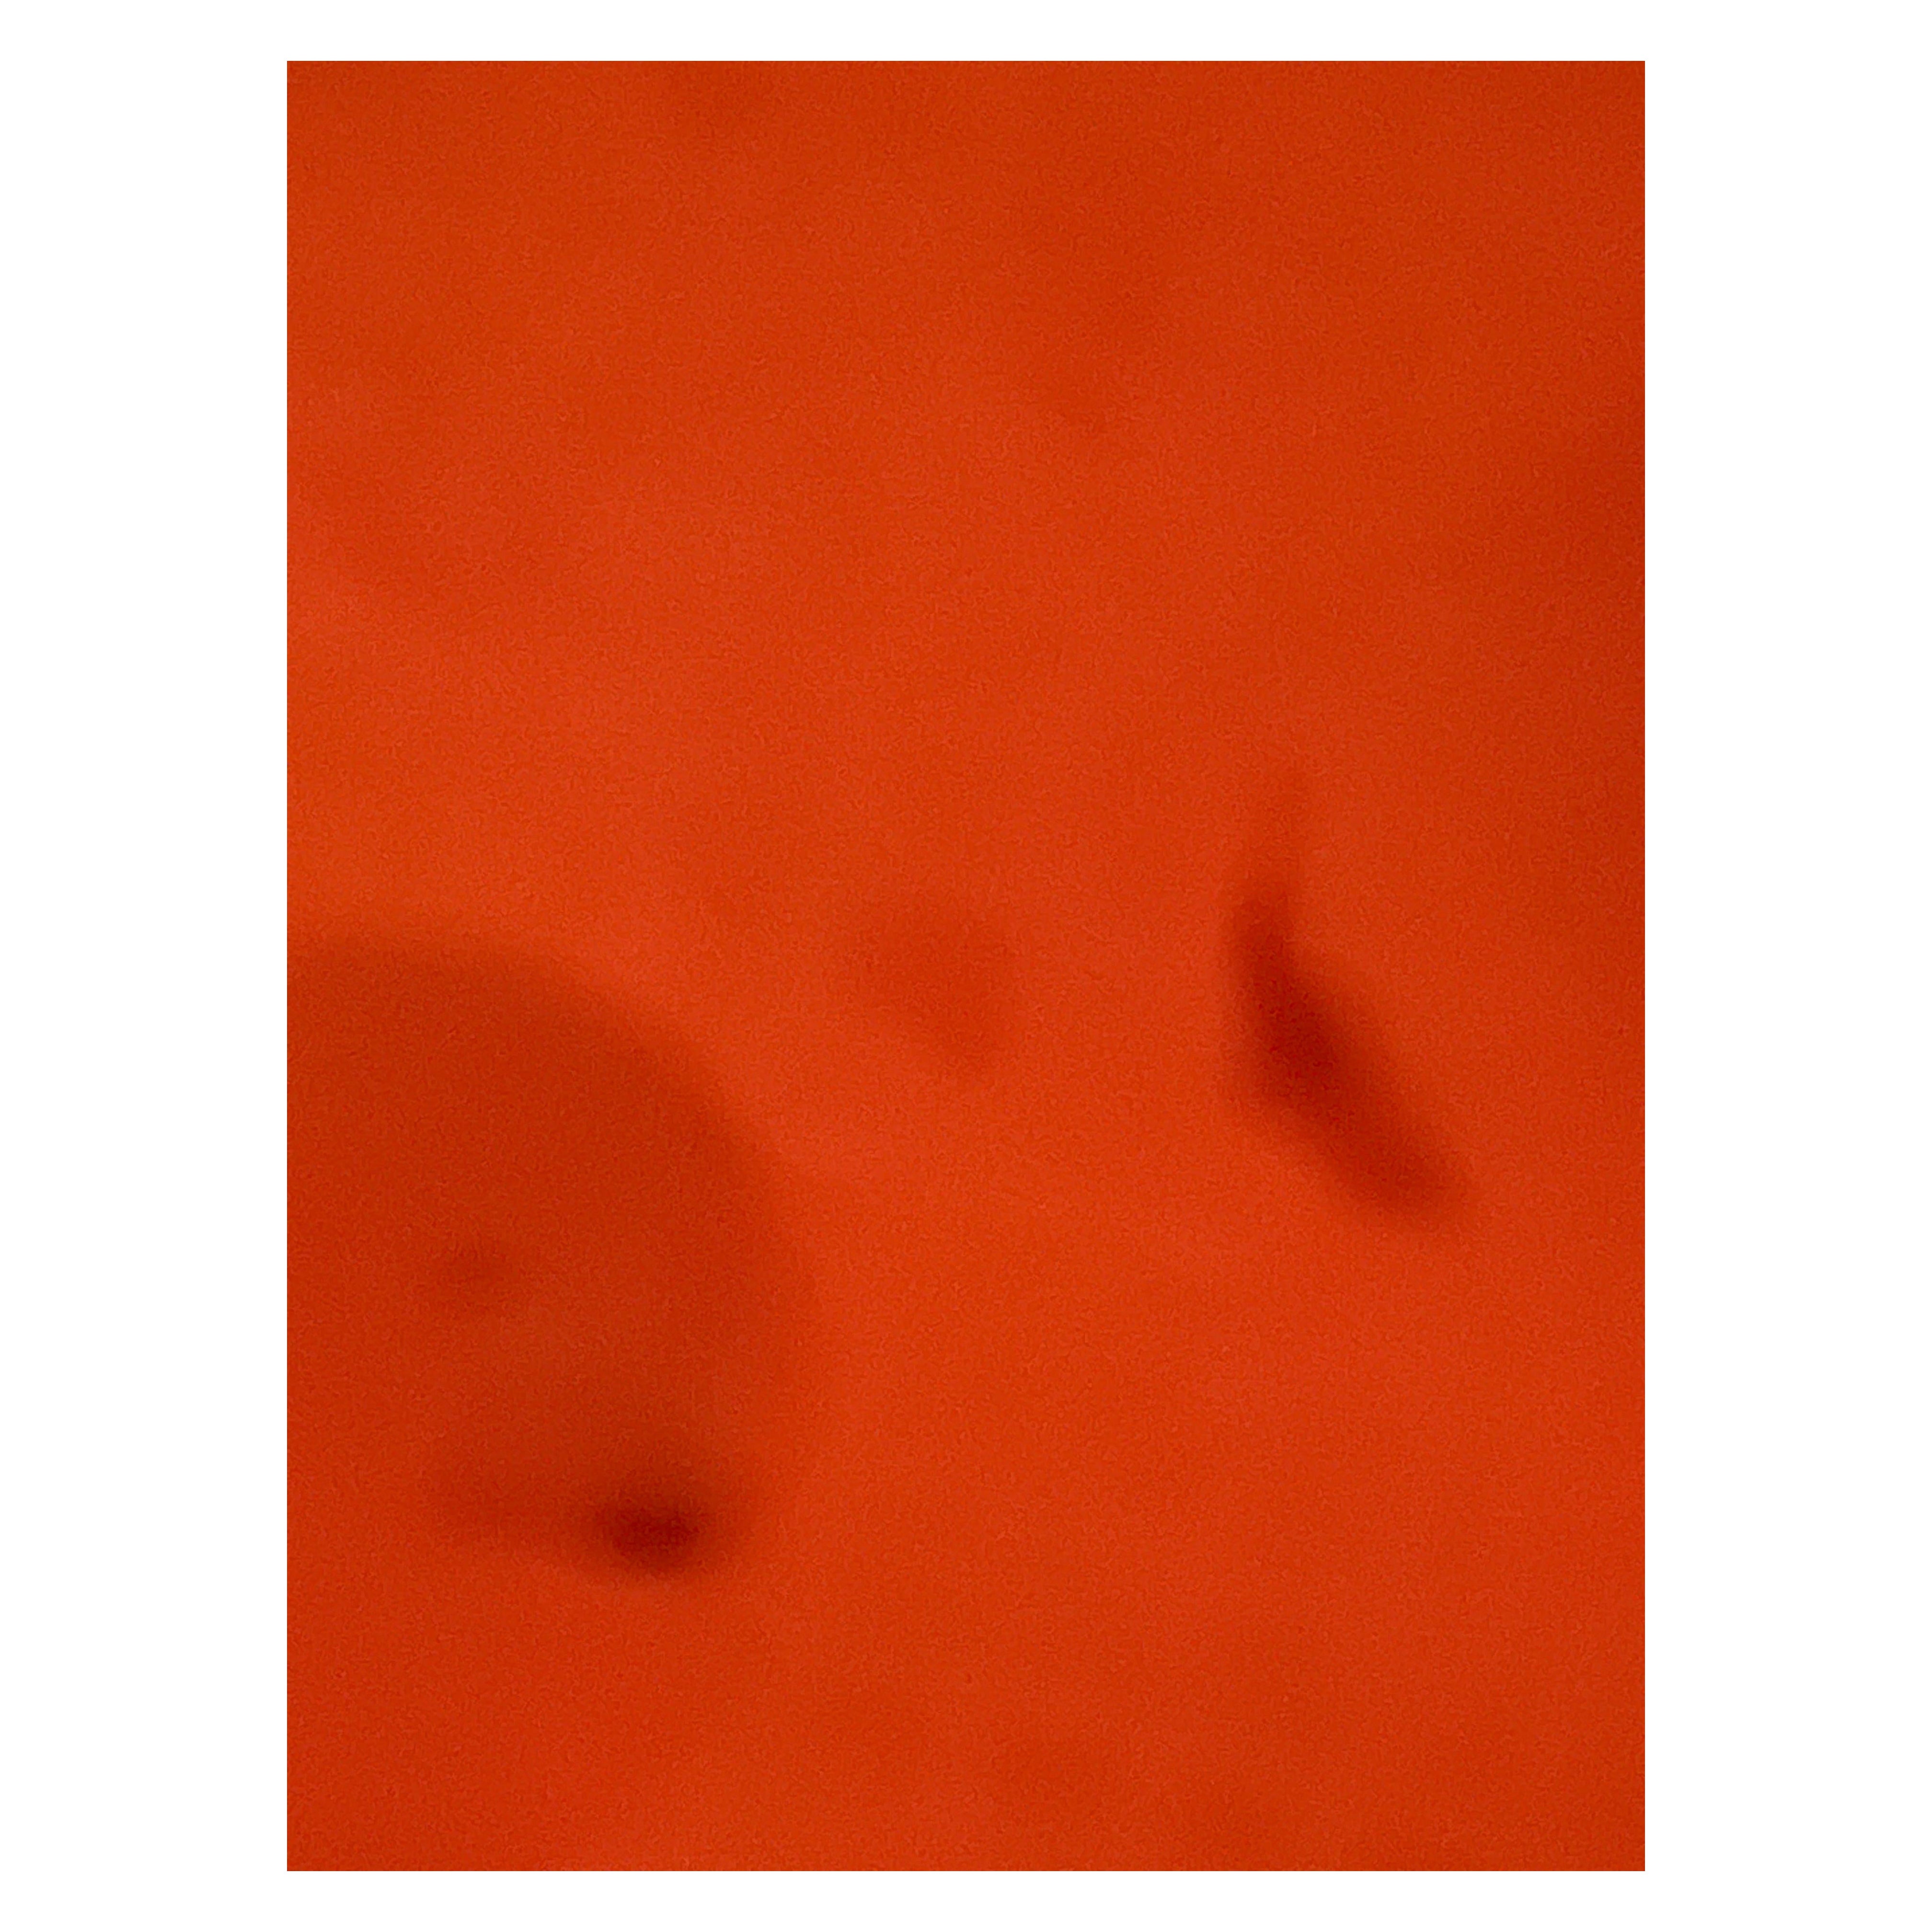 Abstract Photograph Stefanie Schneider - Life on Mars (Mon projet de vie au désert) - Chapeau